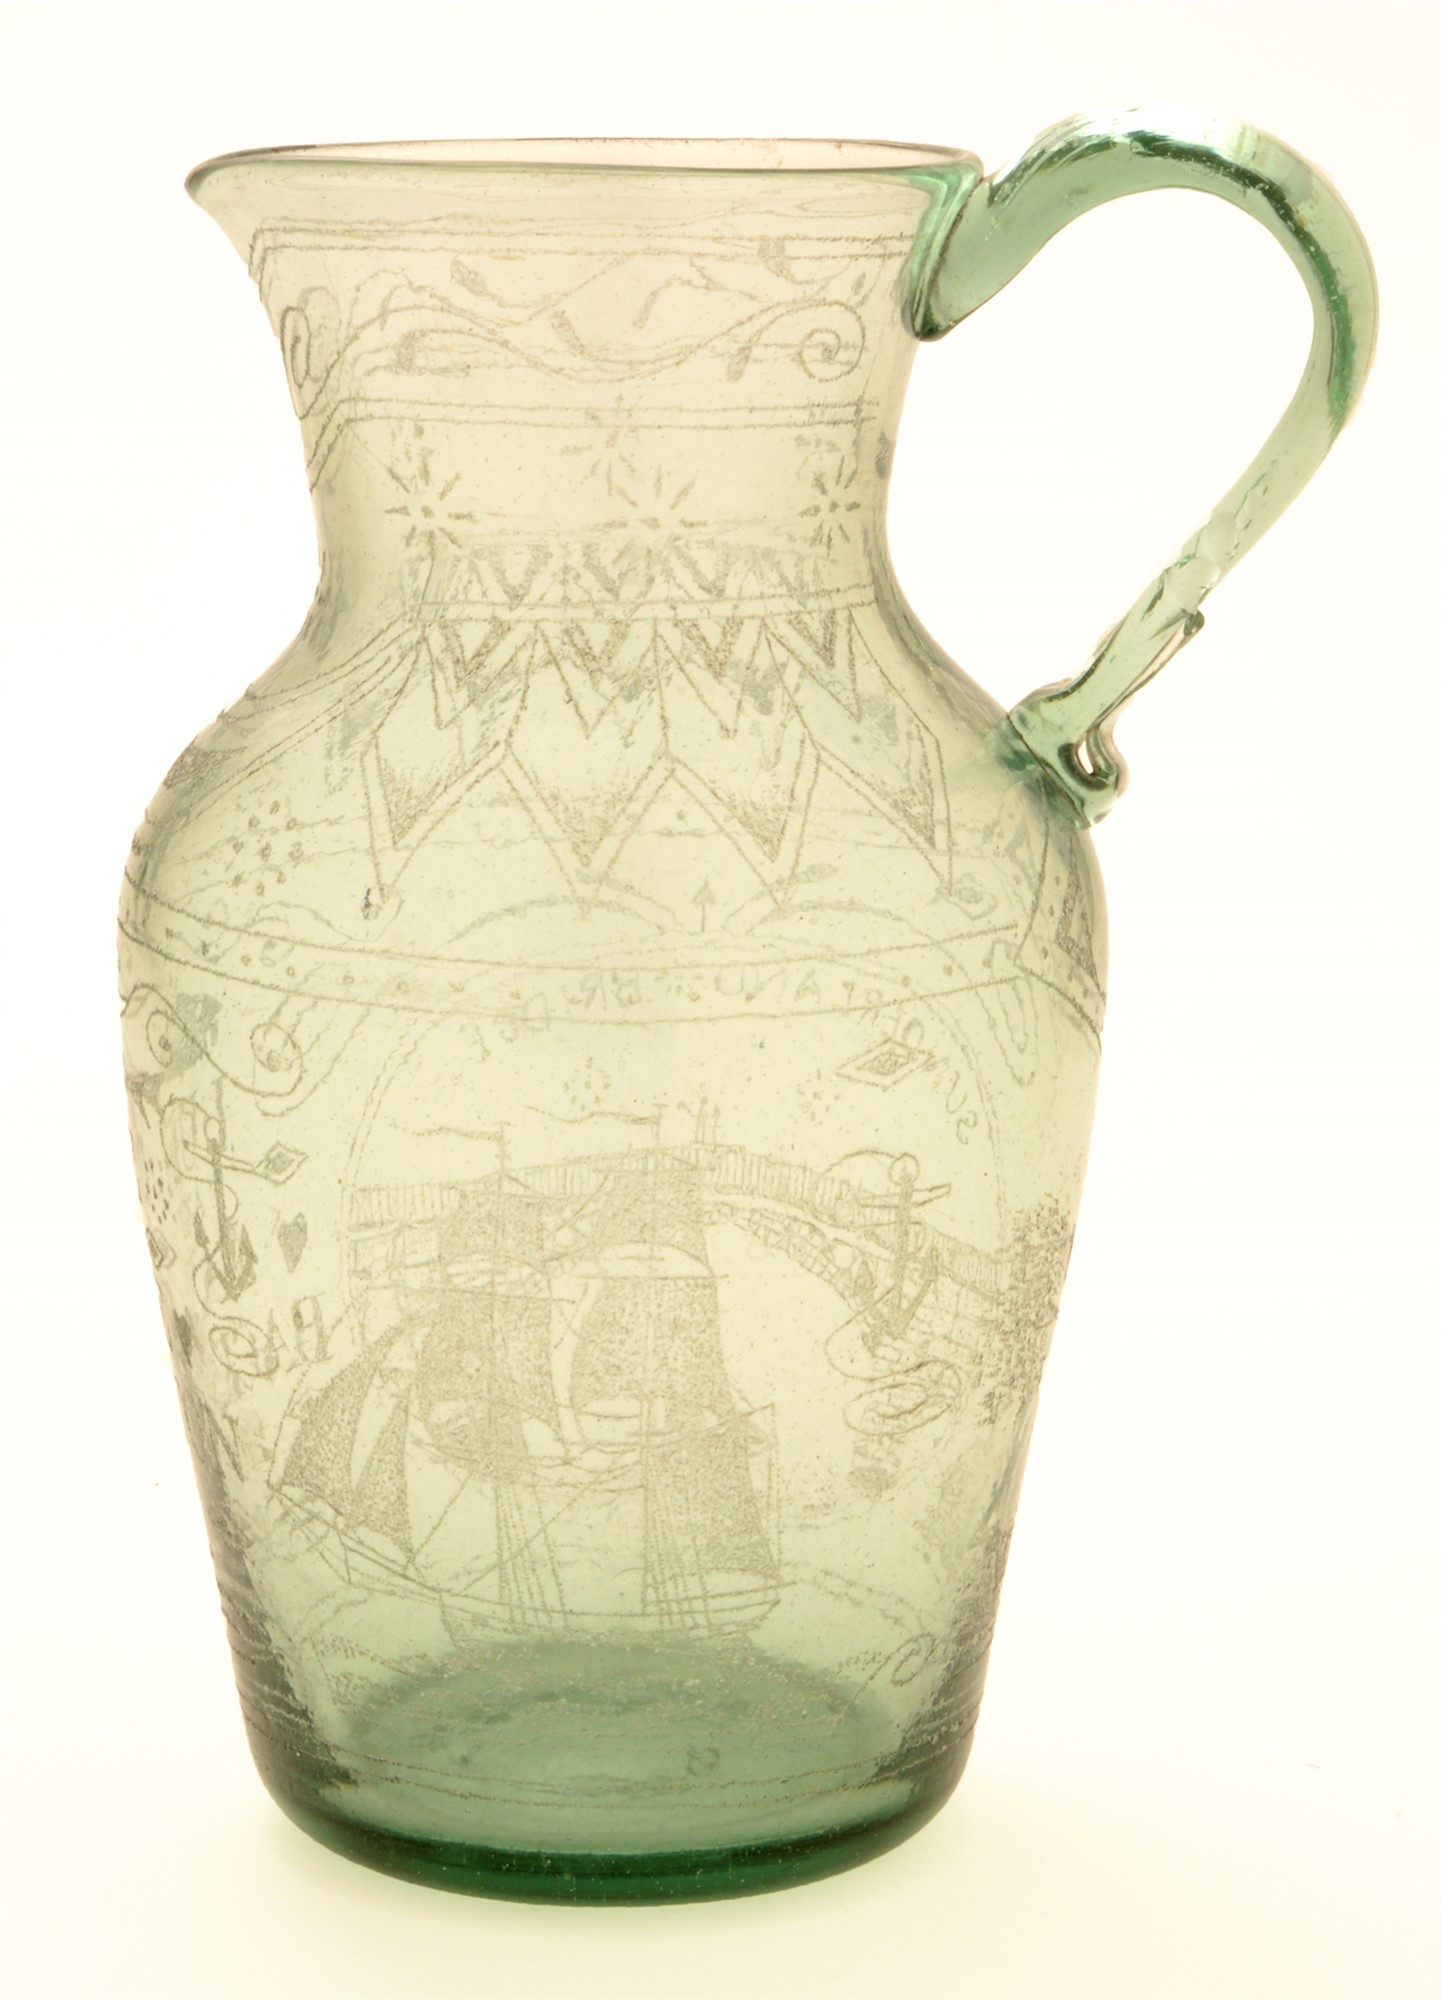 Sunderland glass jug.